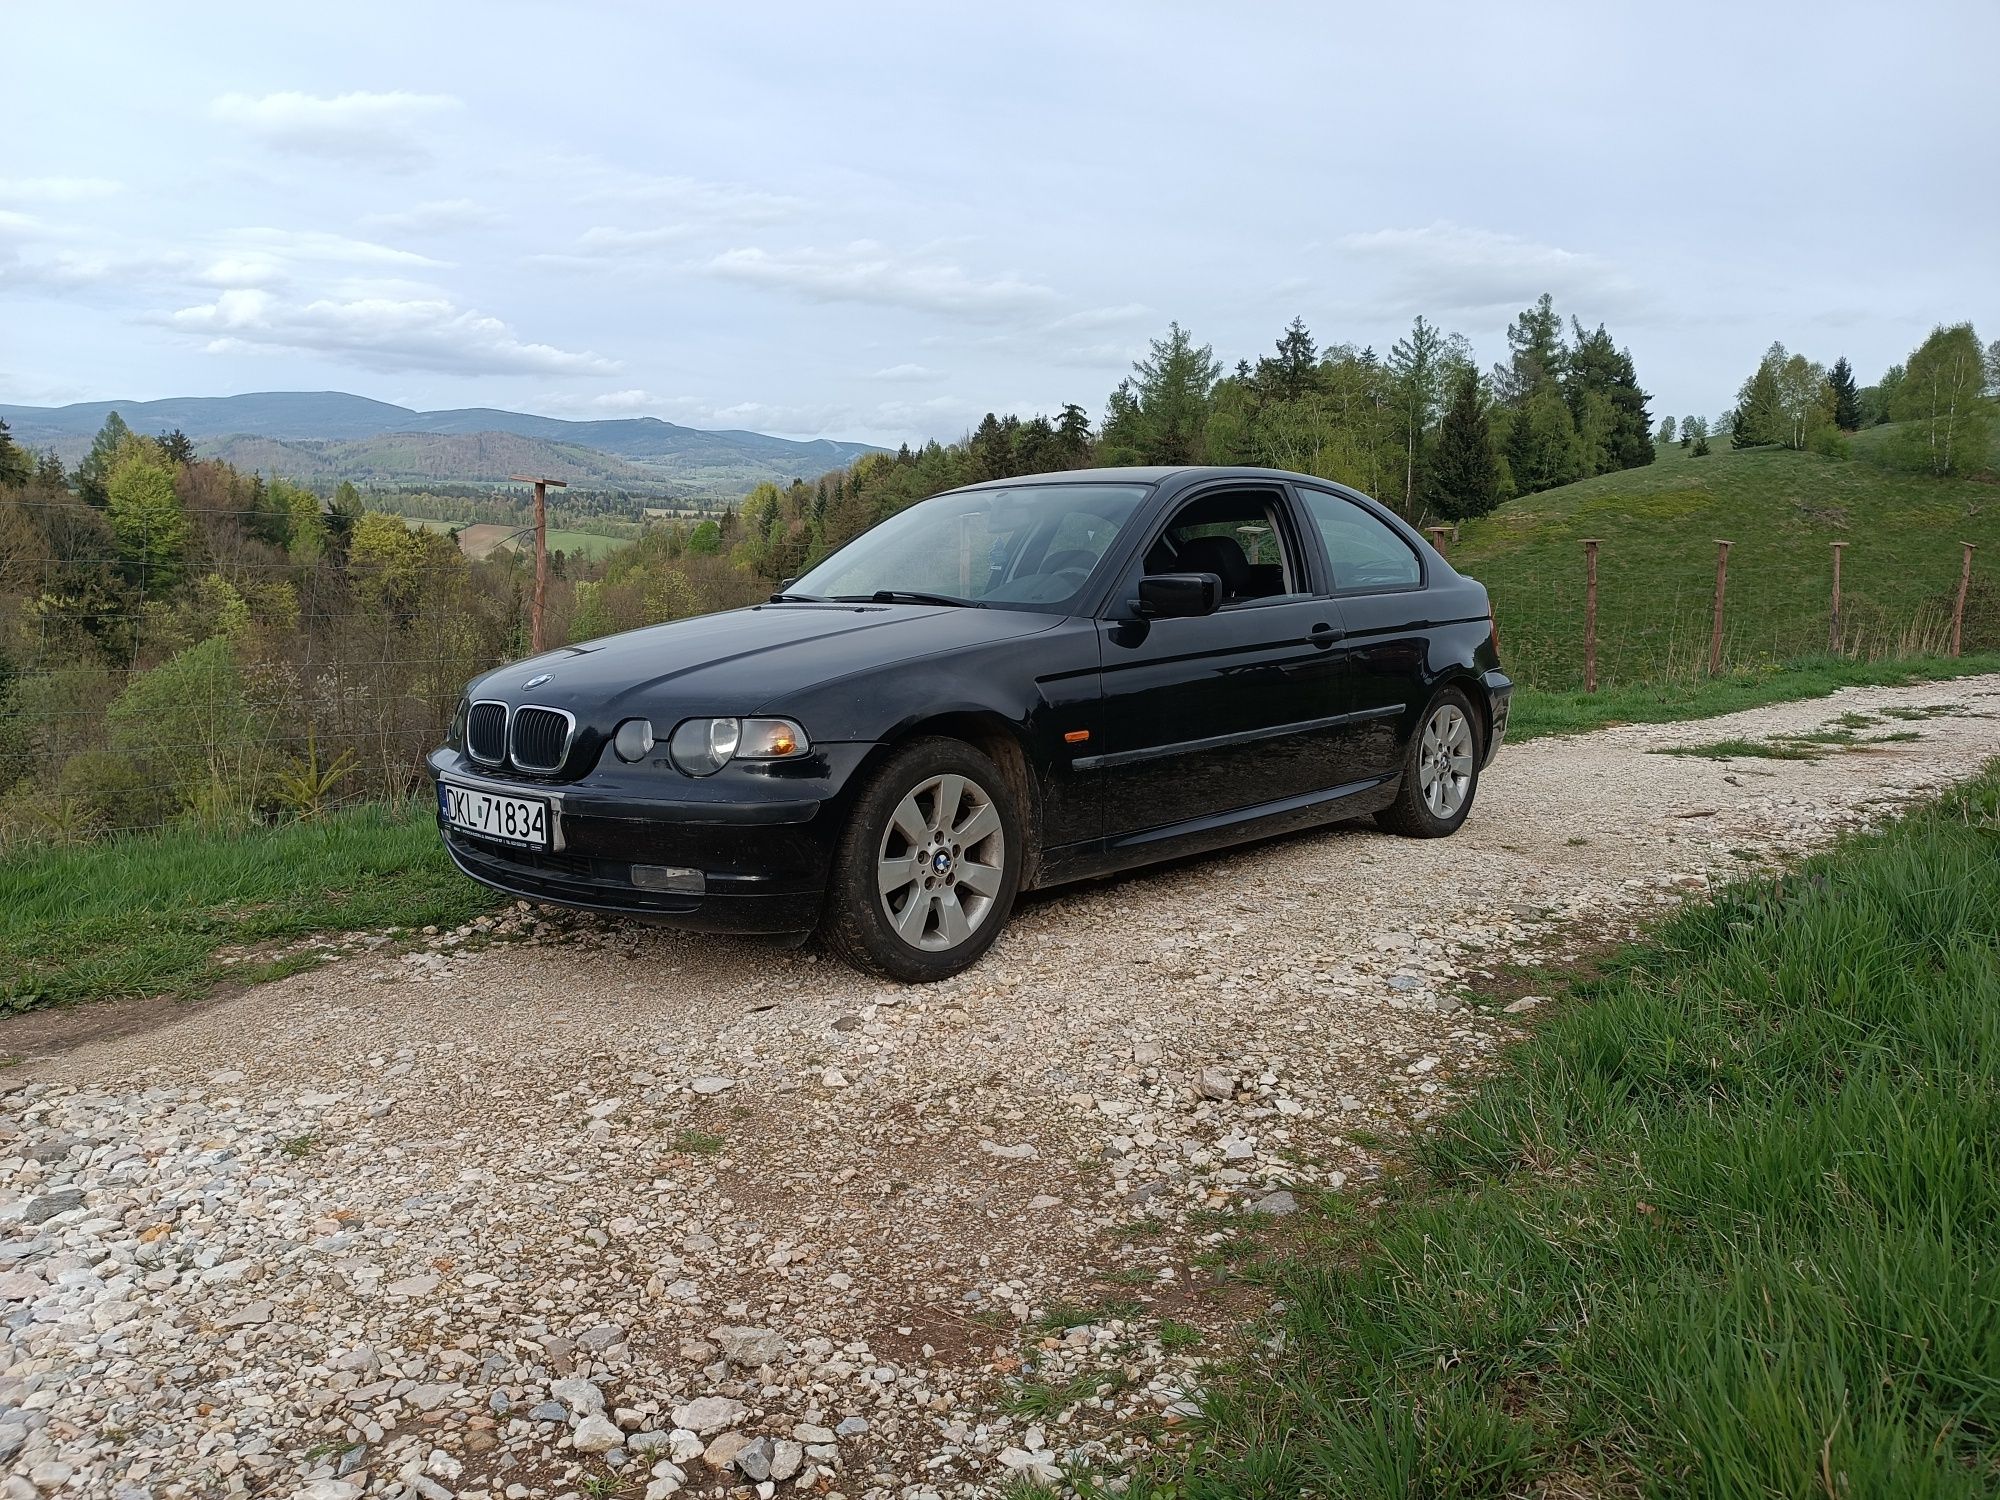 BMW e46 2.0d po serwisie,2004 zamiana na ciągnik